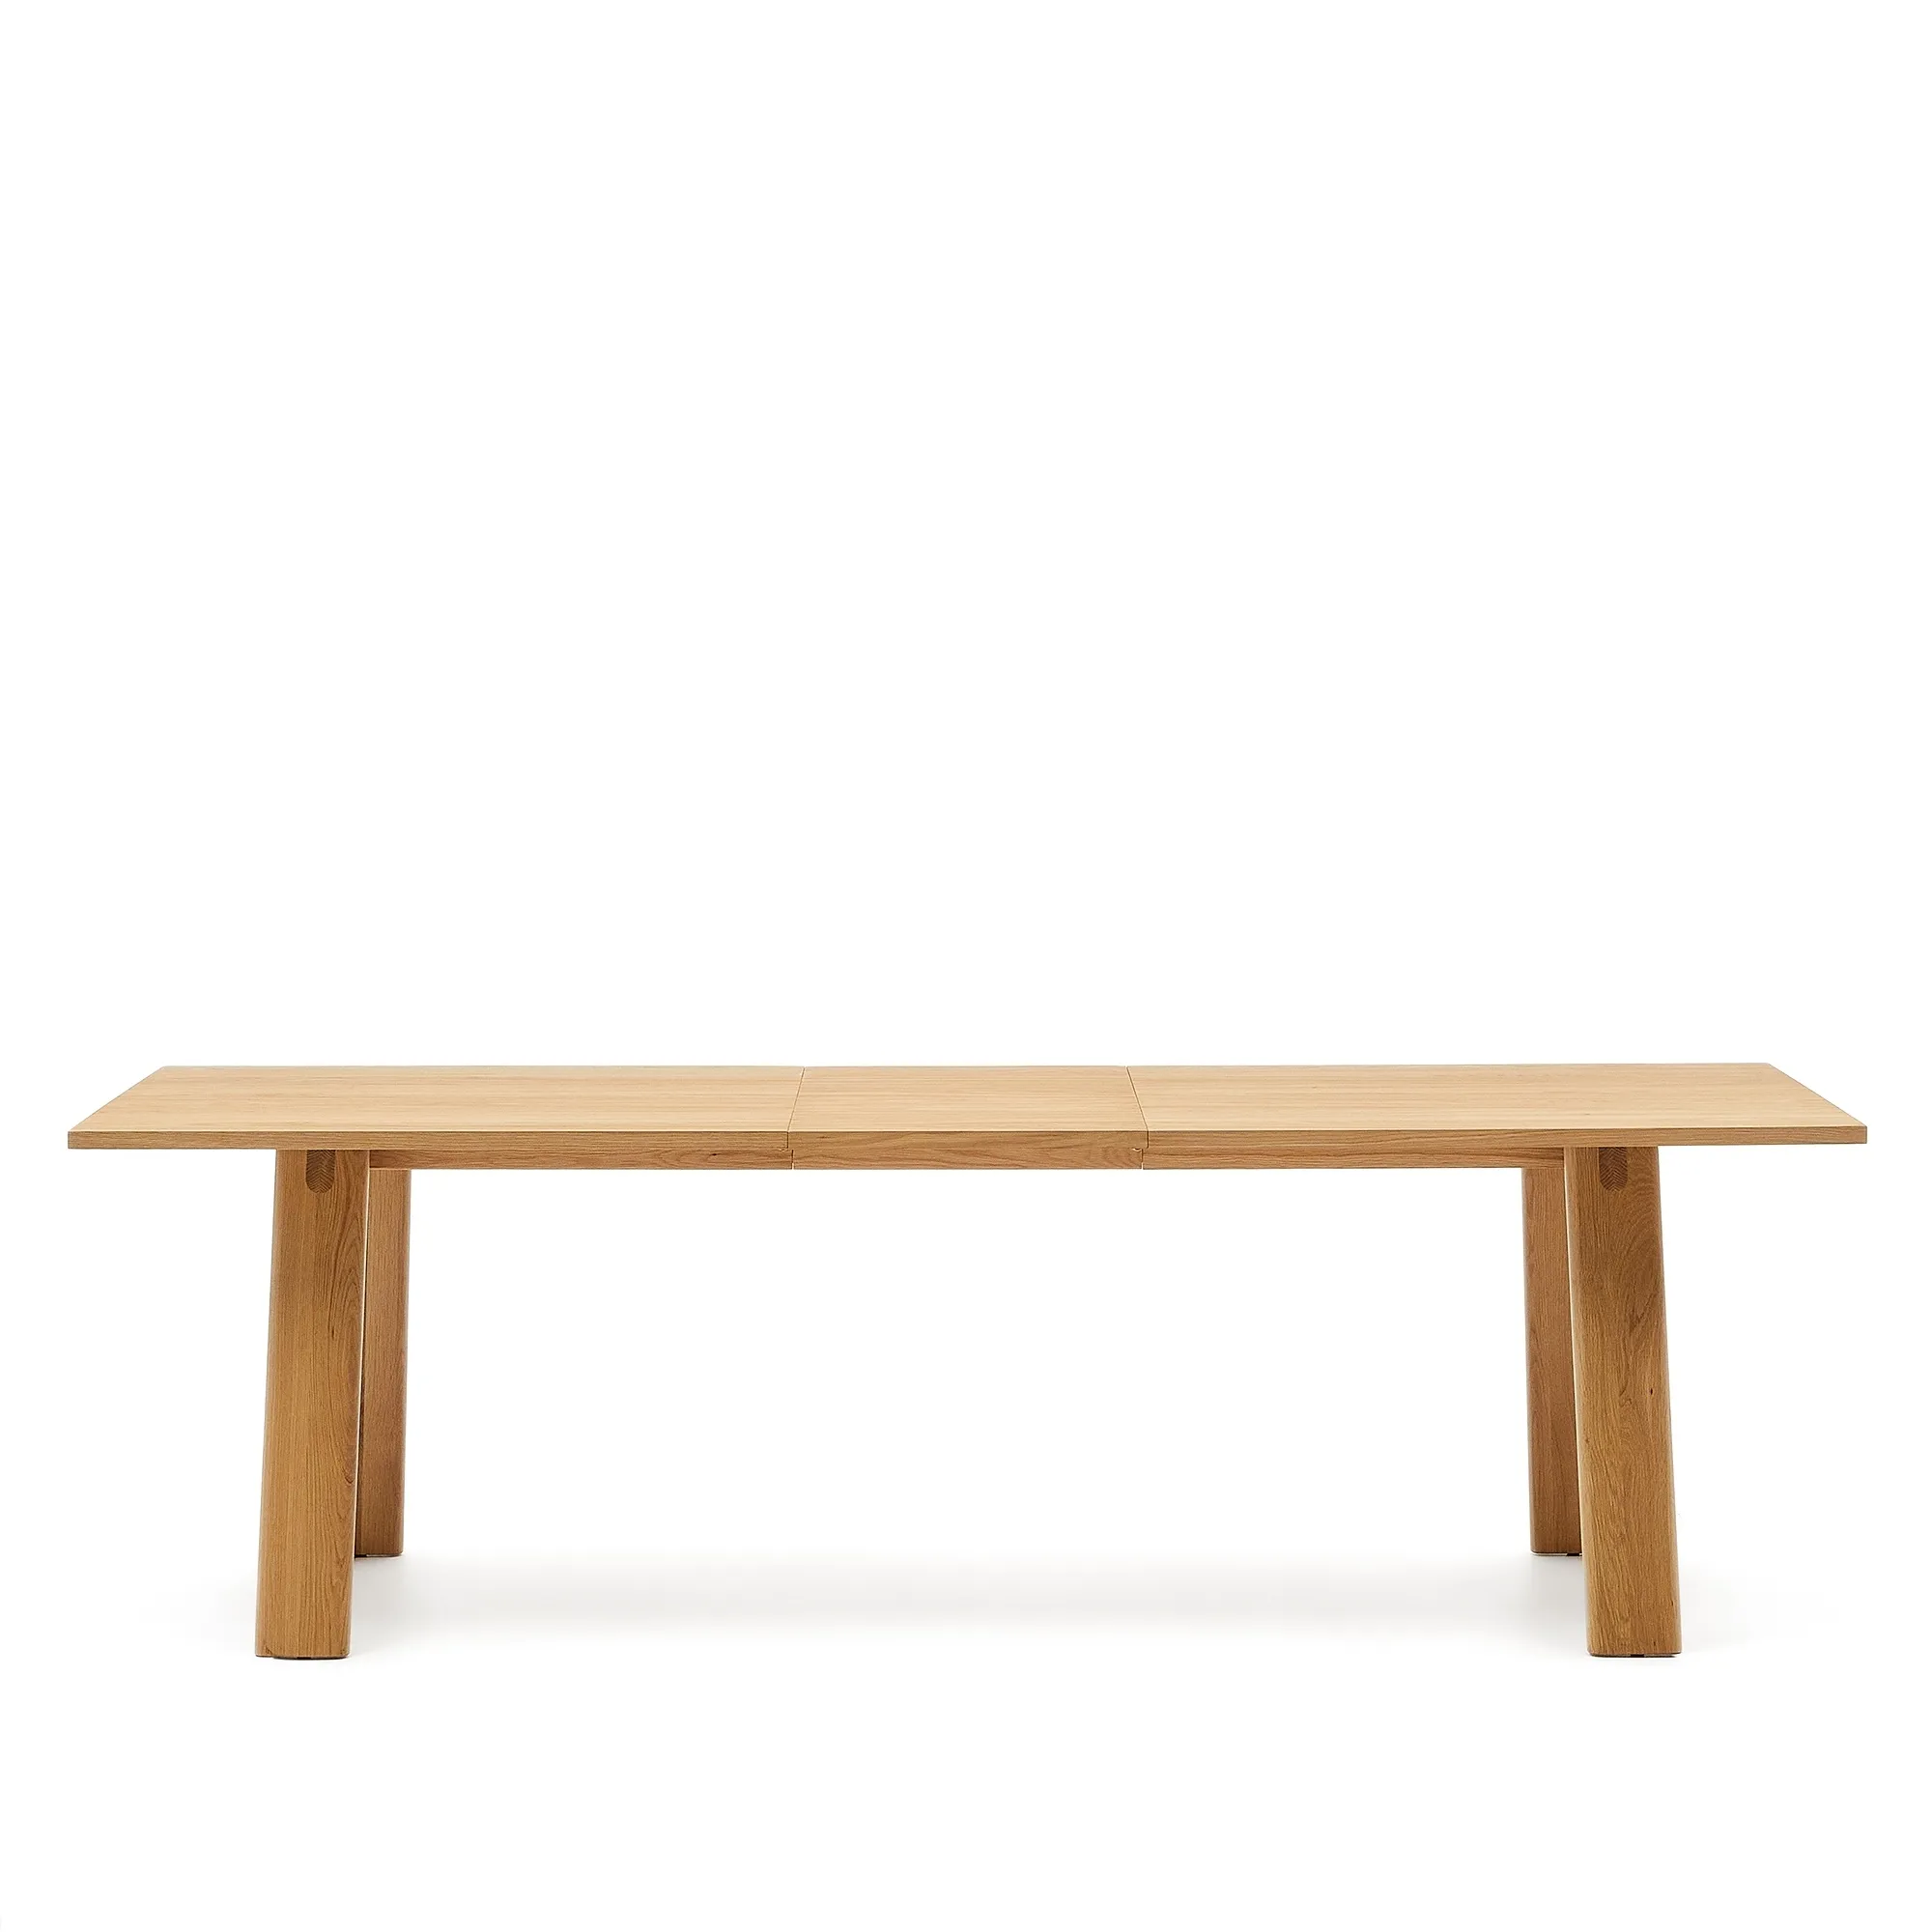 Раздвижной обеденный стол La Forma Arlen шпон дуба с натуральной отделкой 95х200-250 см 189965